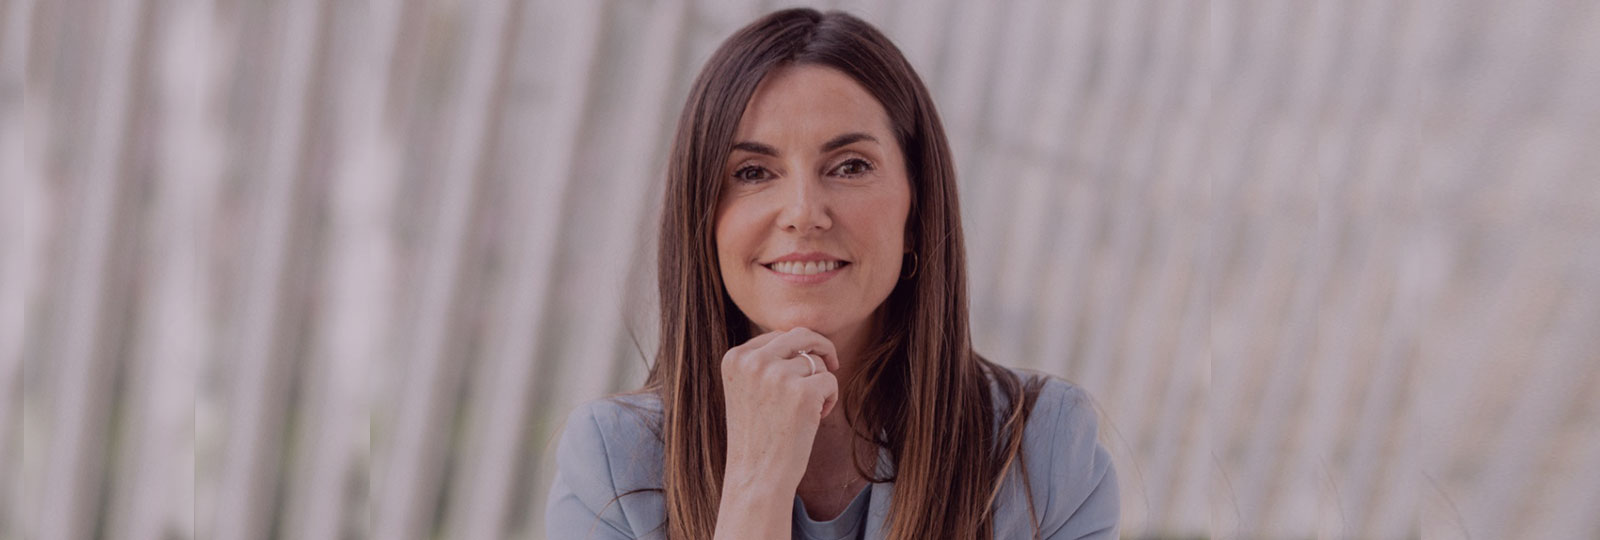 Laura Ruiz, Women Lab Bilbaoren sortzailea: “Zuk zer gertatzea nahi, hura gertatzea da arrakasta”